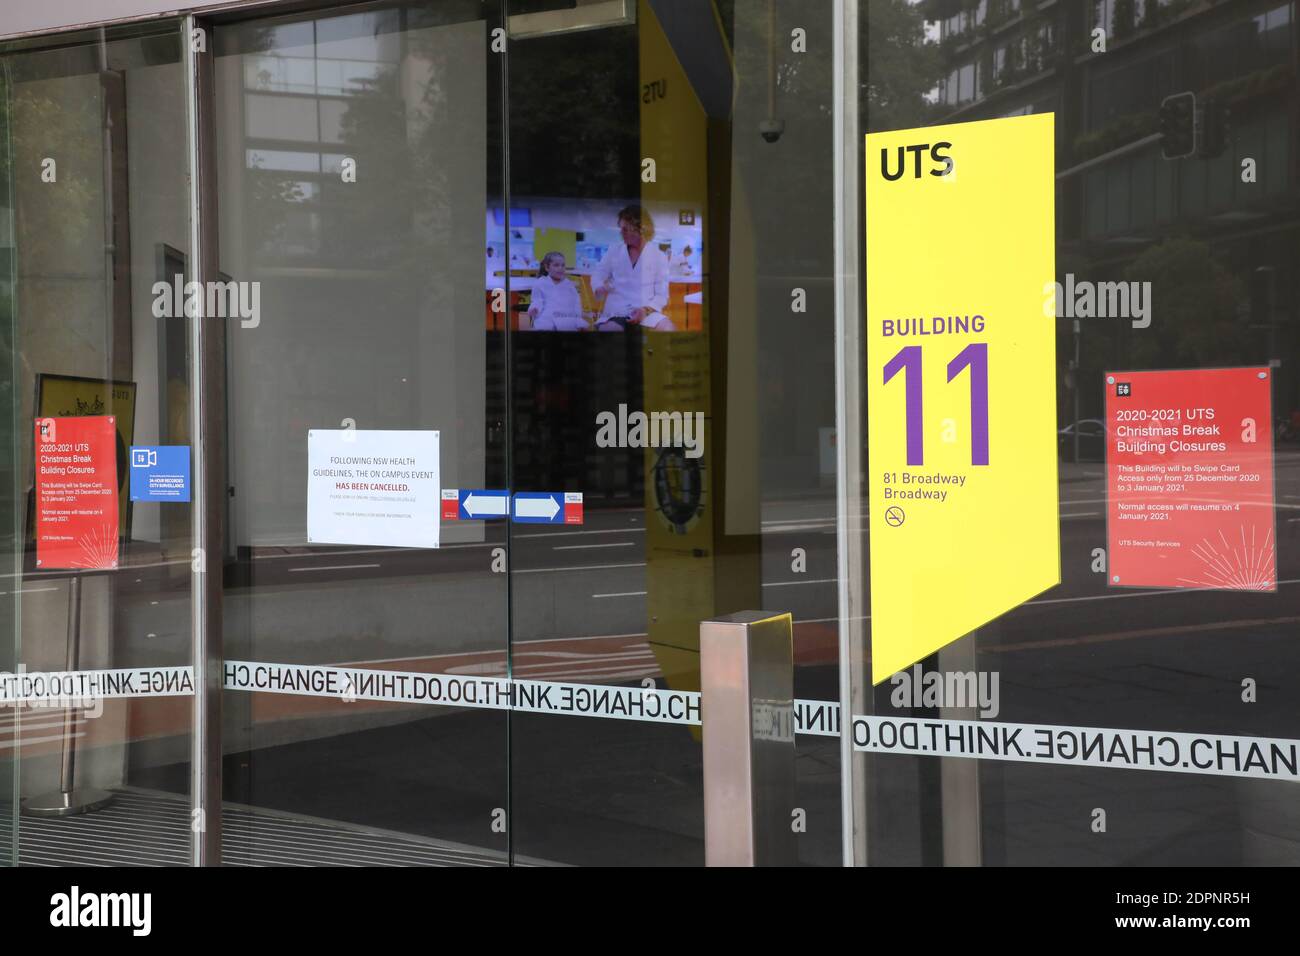 UTS building 11 entrance on Broadway, Sydney. Stock Photo